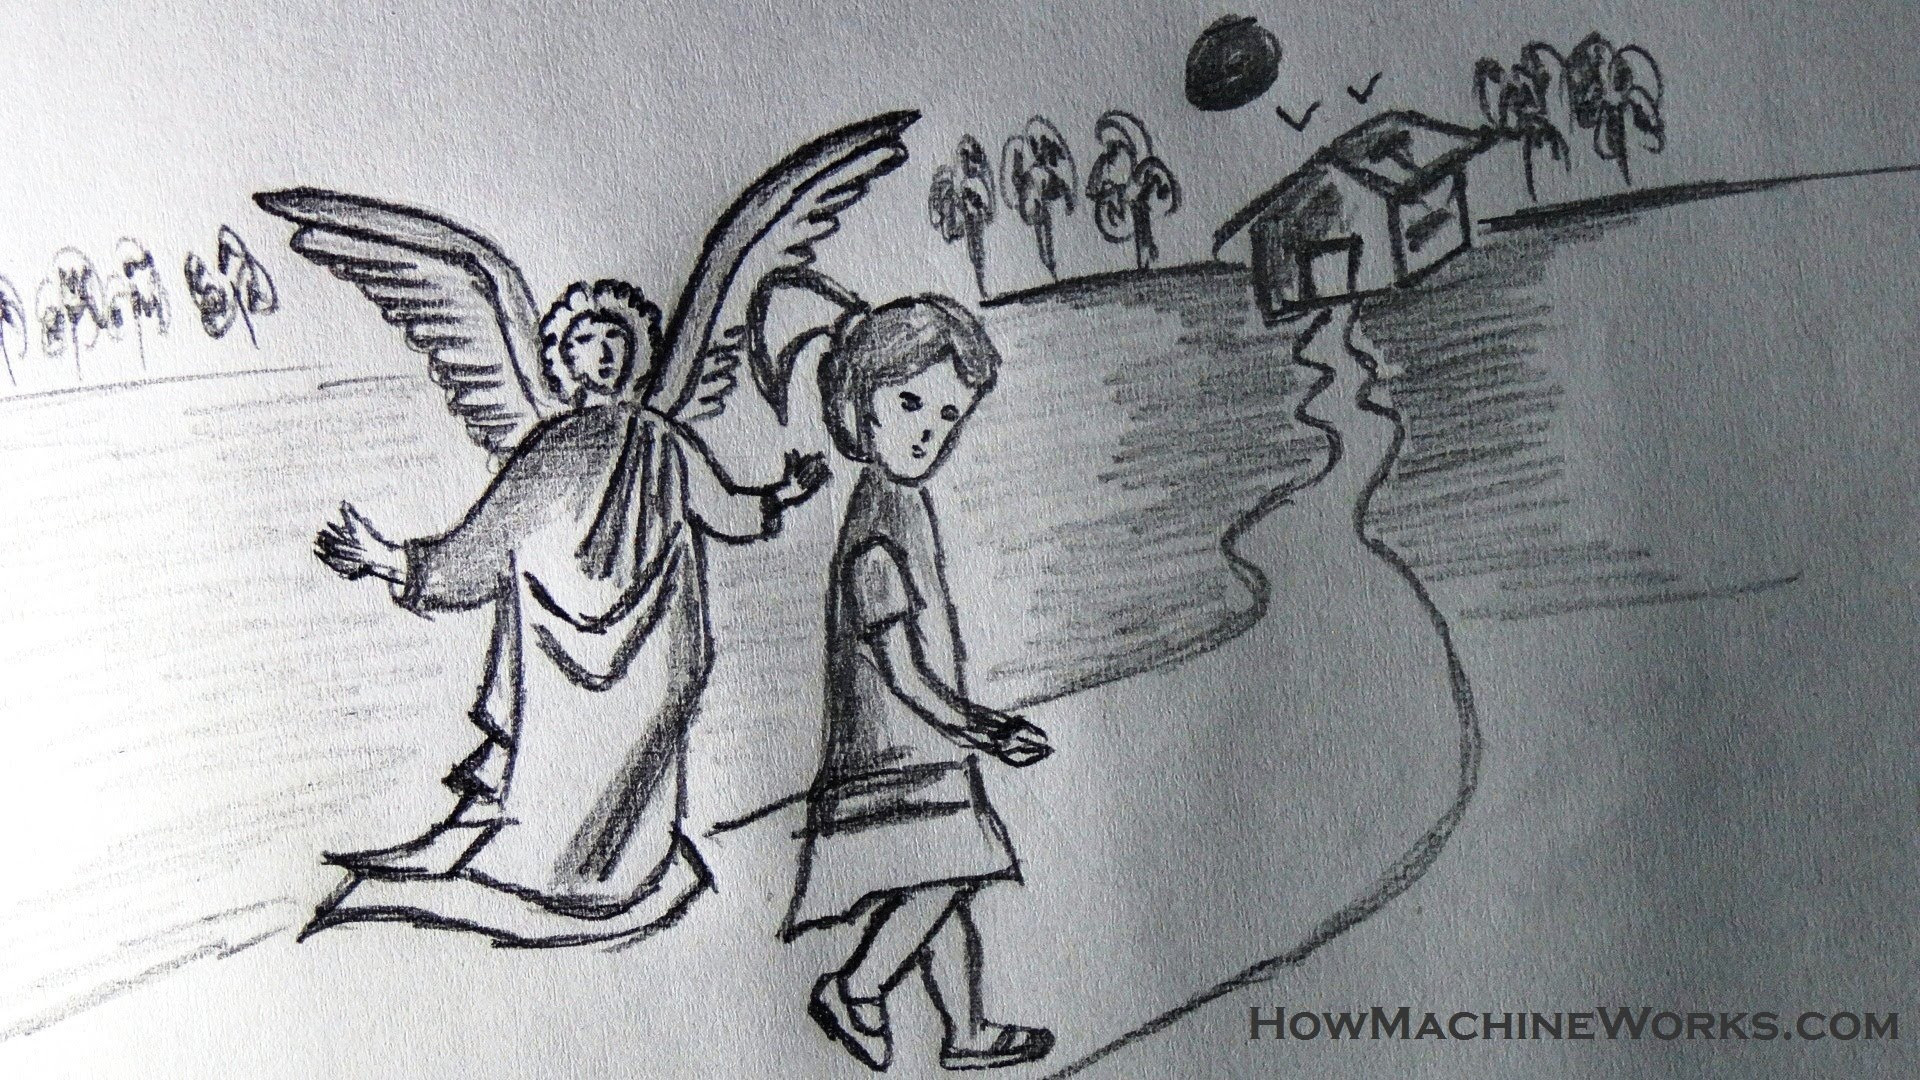 baby angel pencil drawings